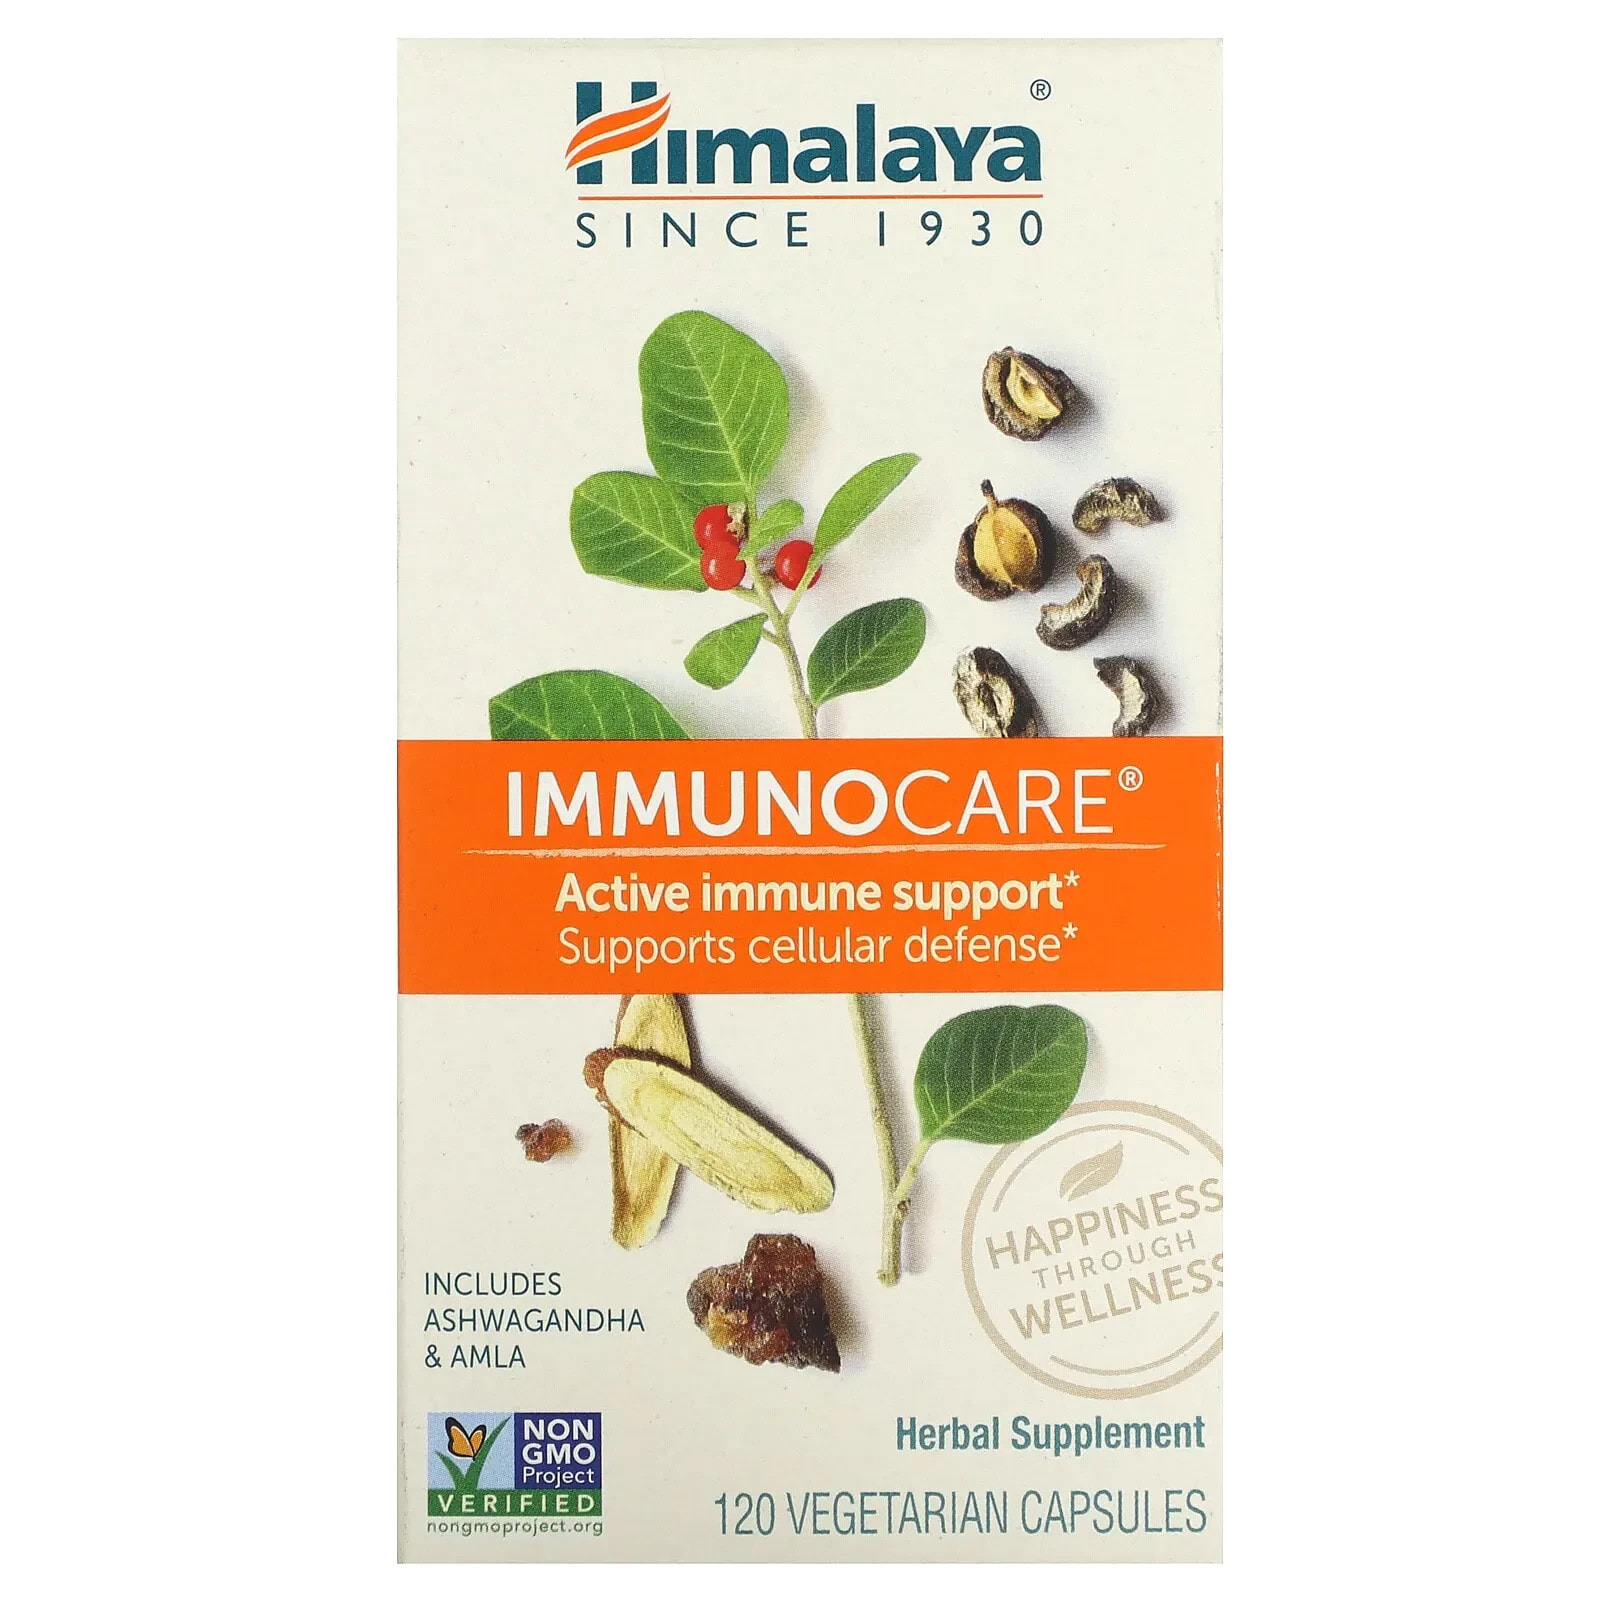 Himalaya, ImmunoCare, 240 Vegetarian Capsules